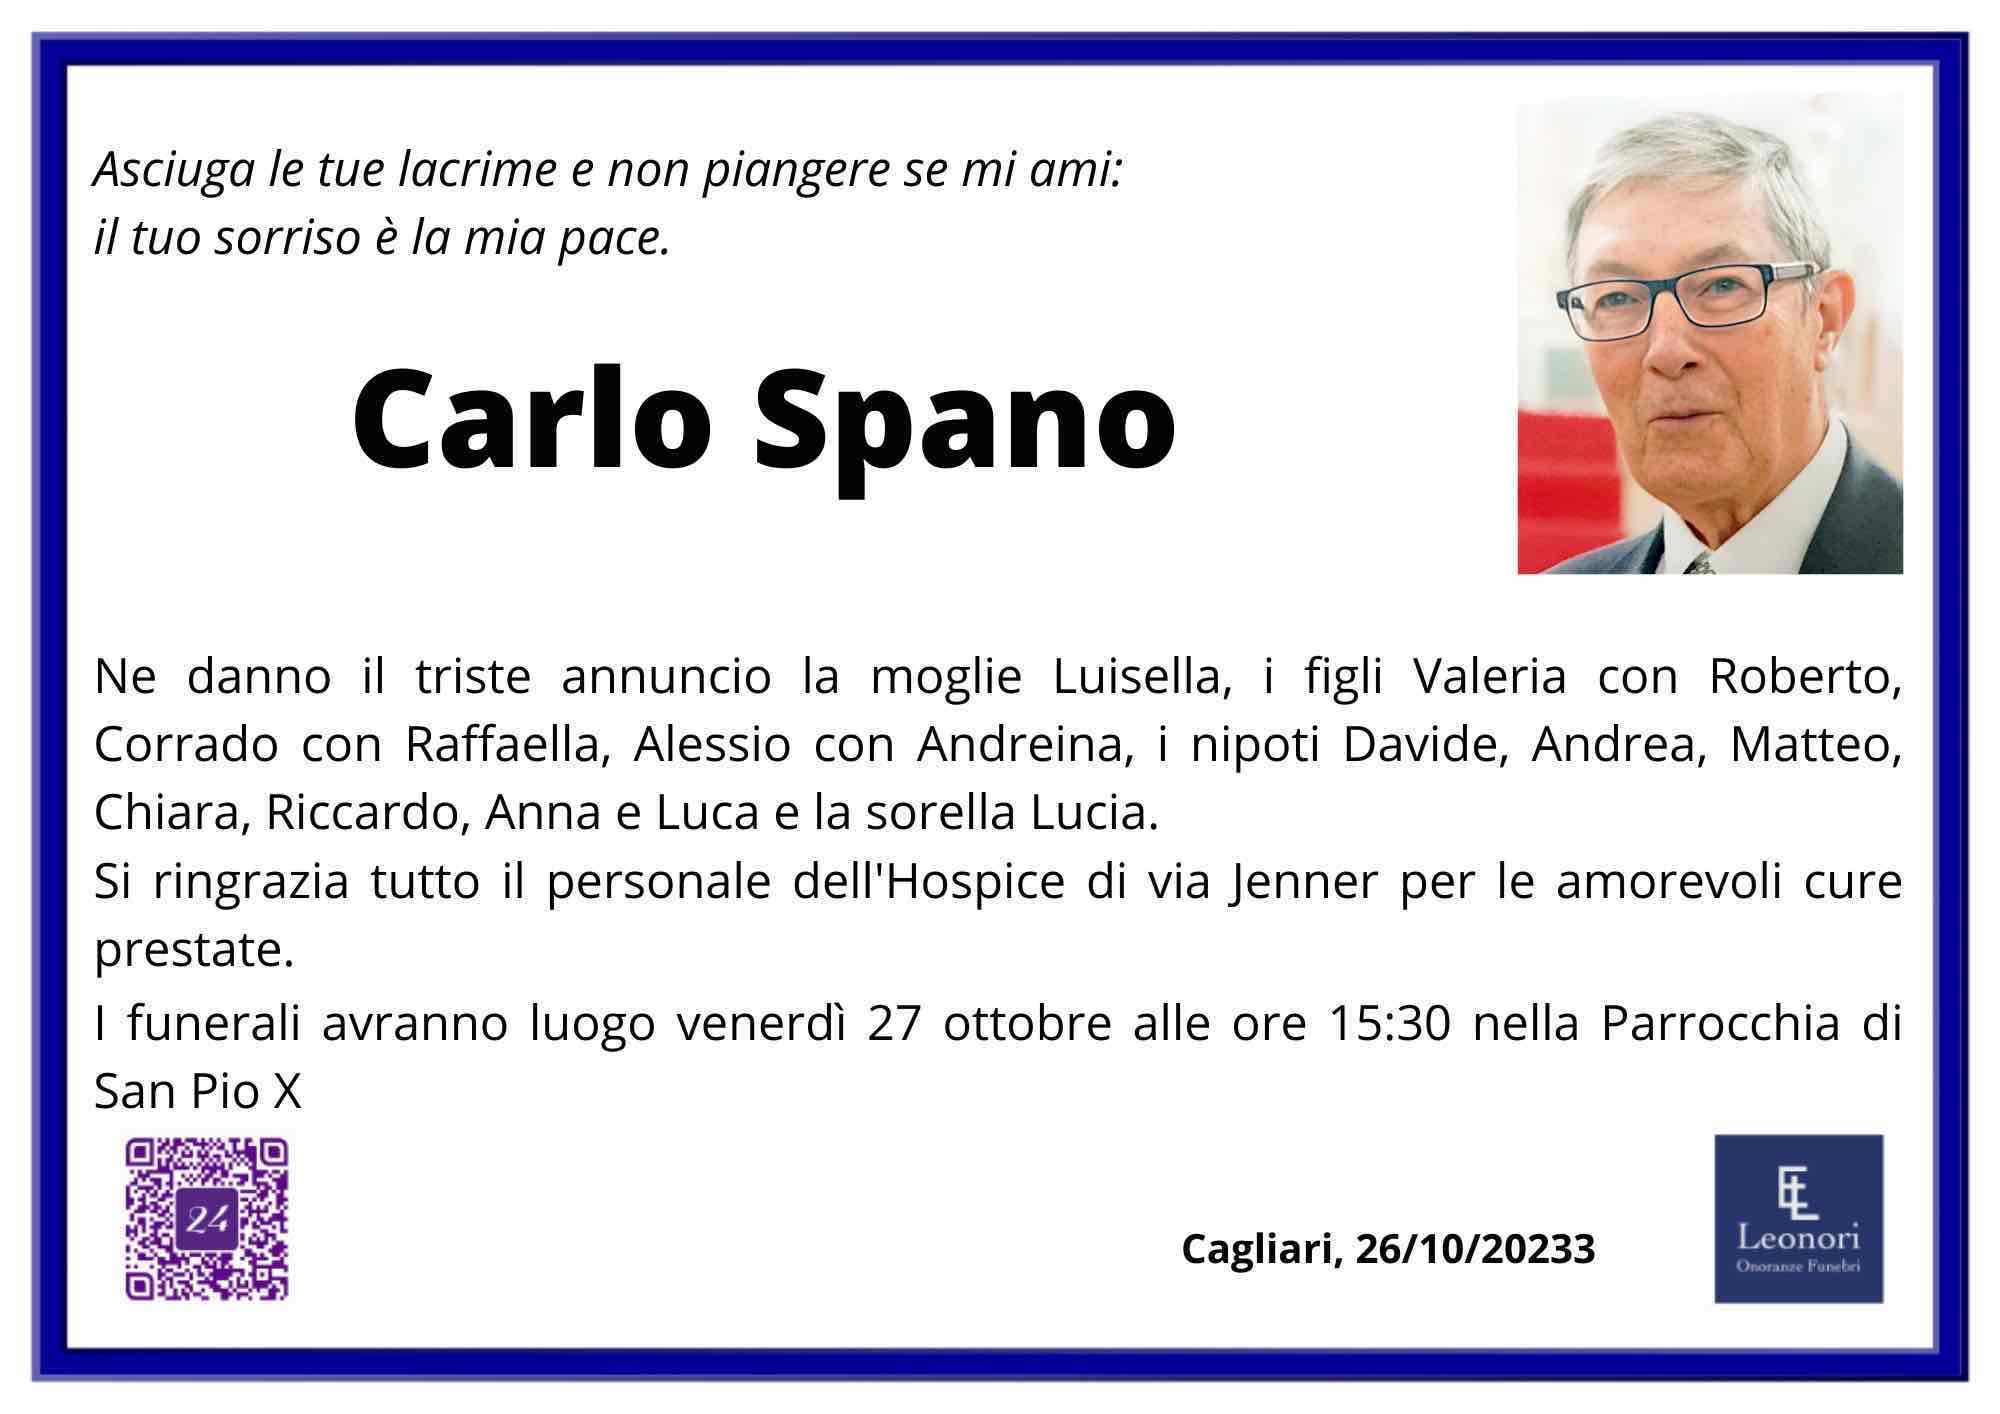 Carlo Spano